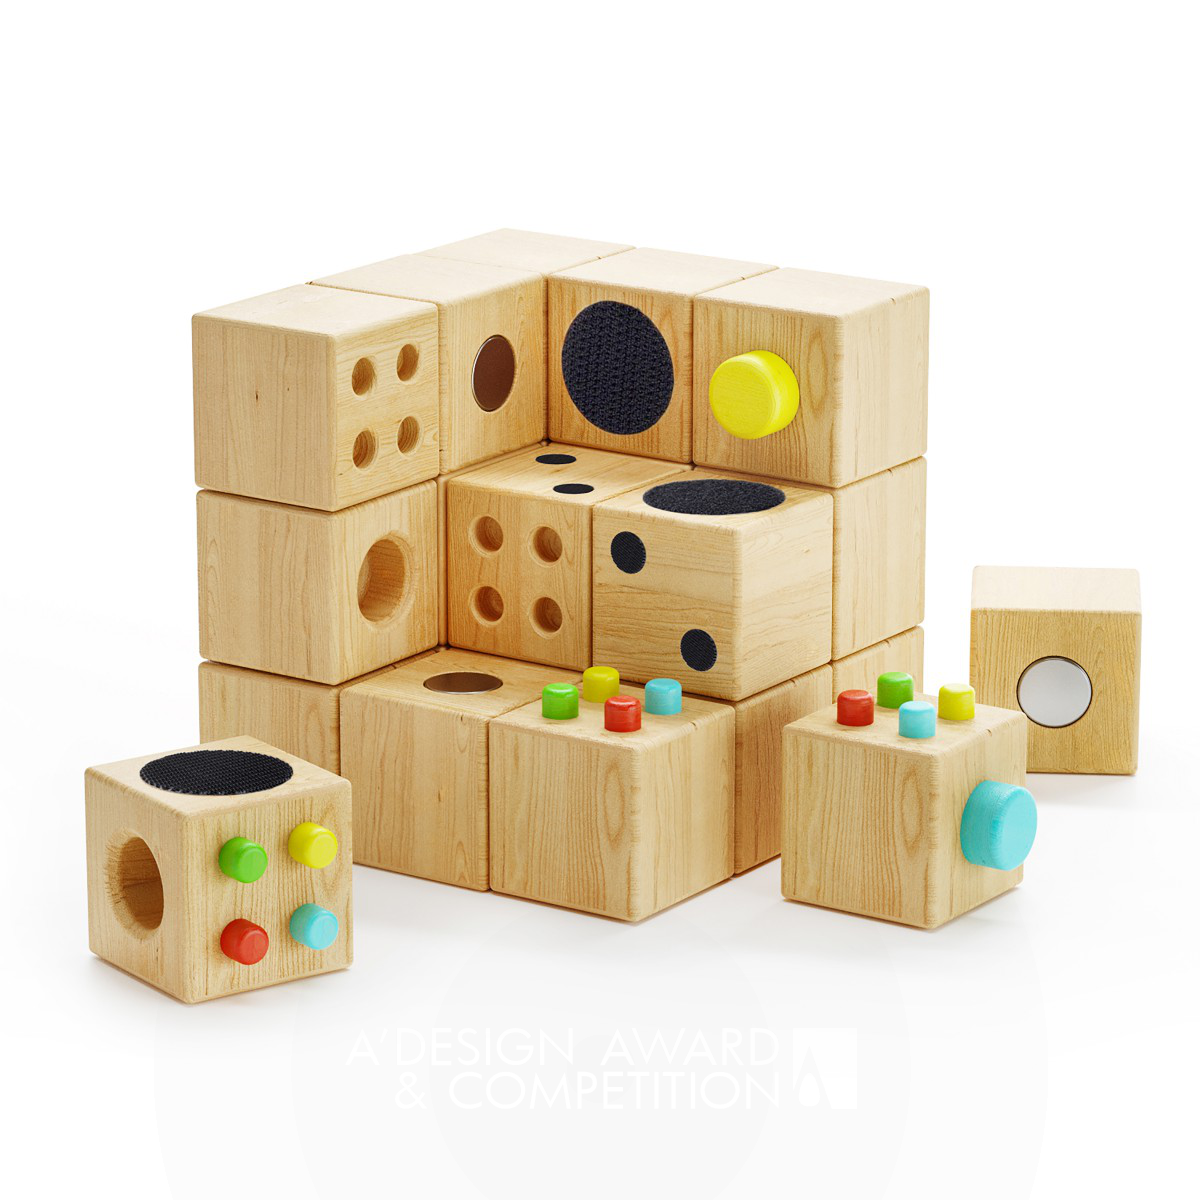 Cubecor: Ein Spielzeug, das Kreativität und Feinmotorik fördert